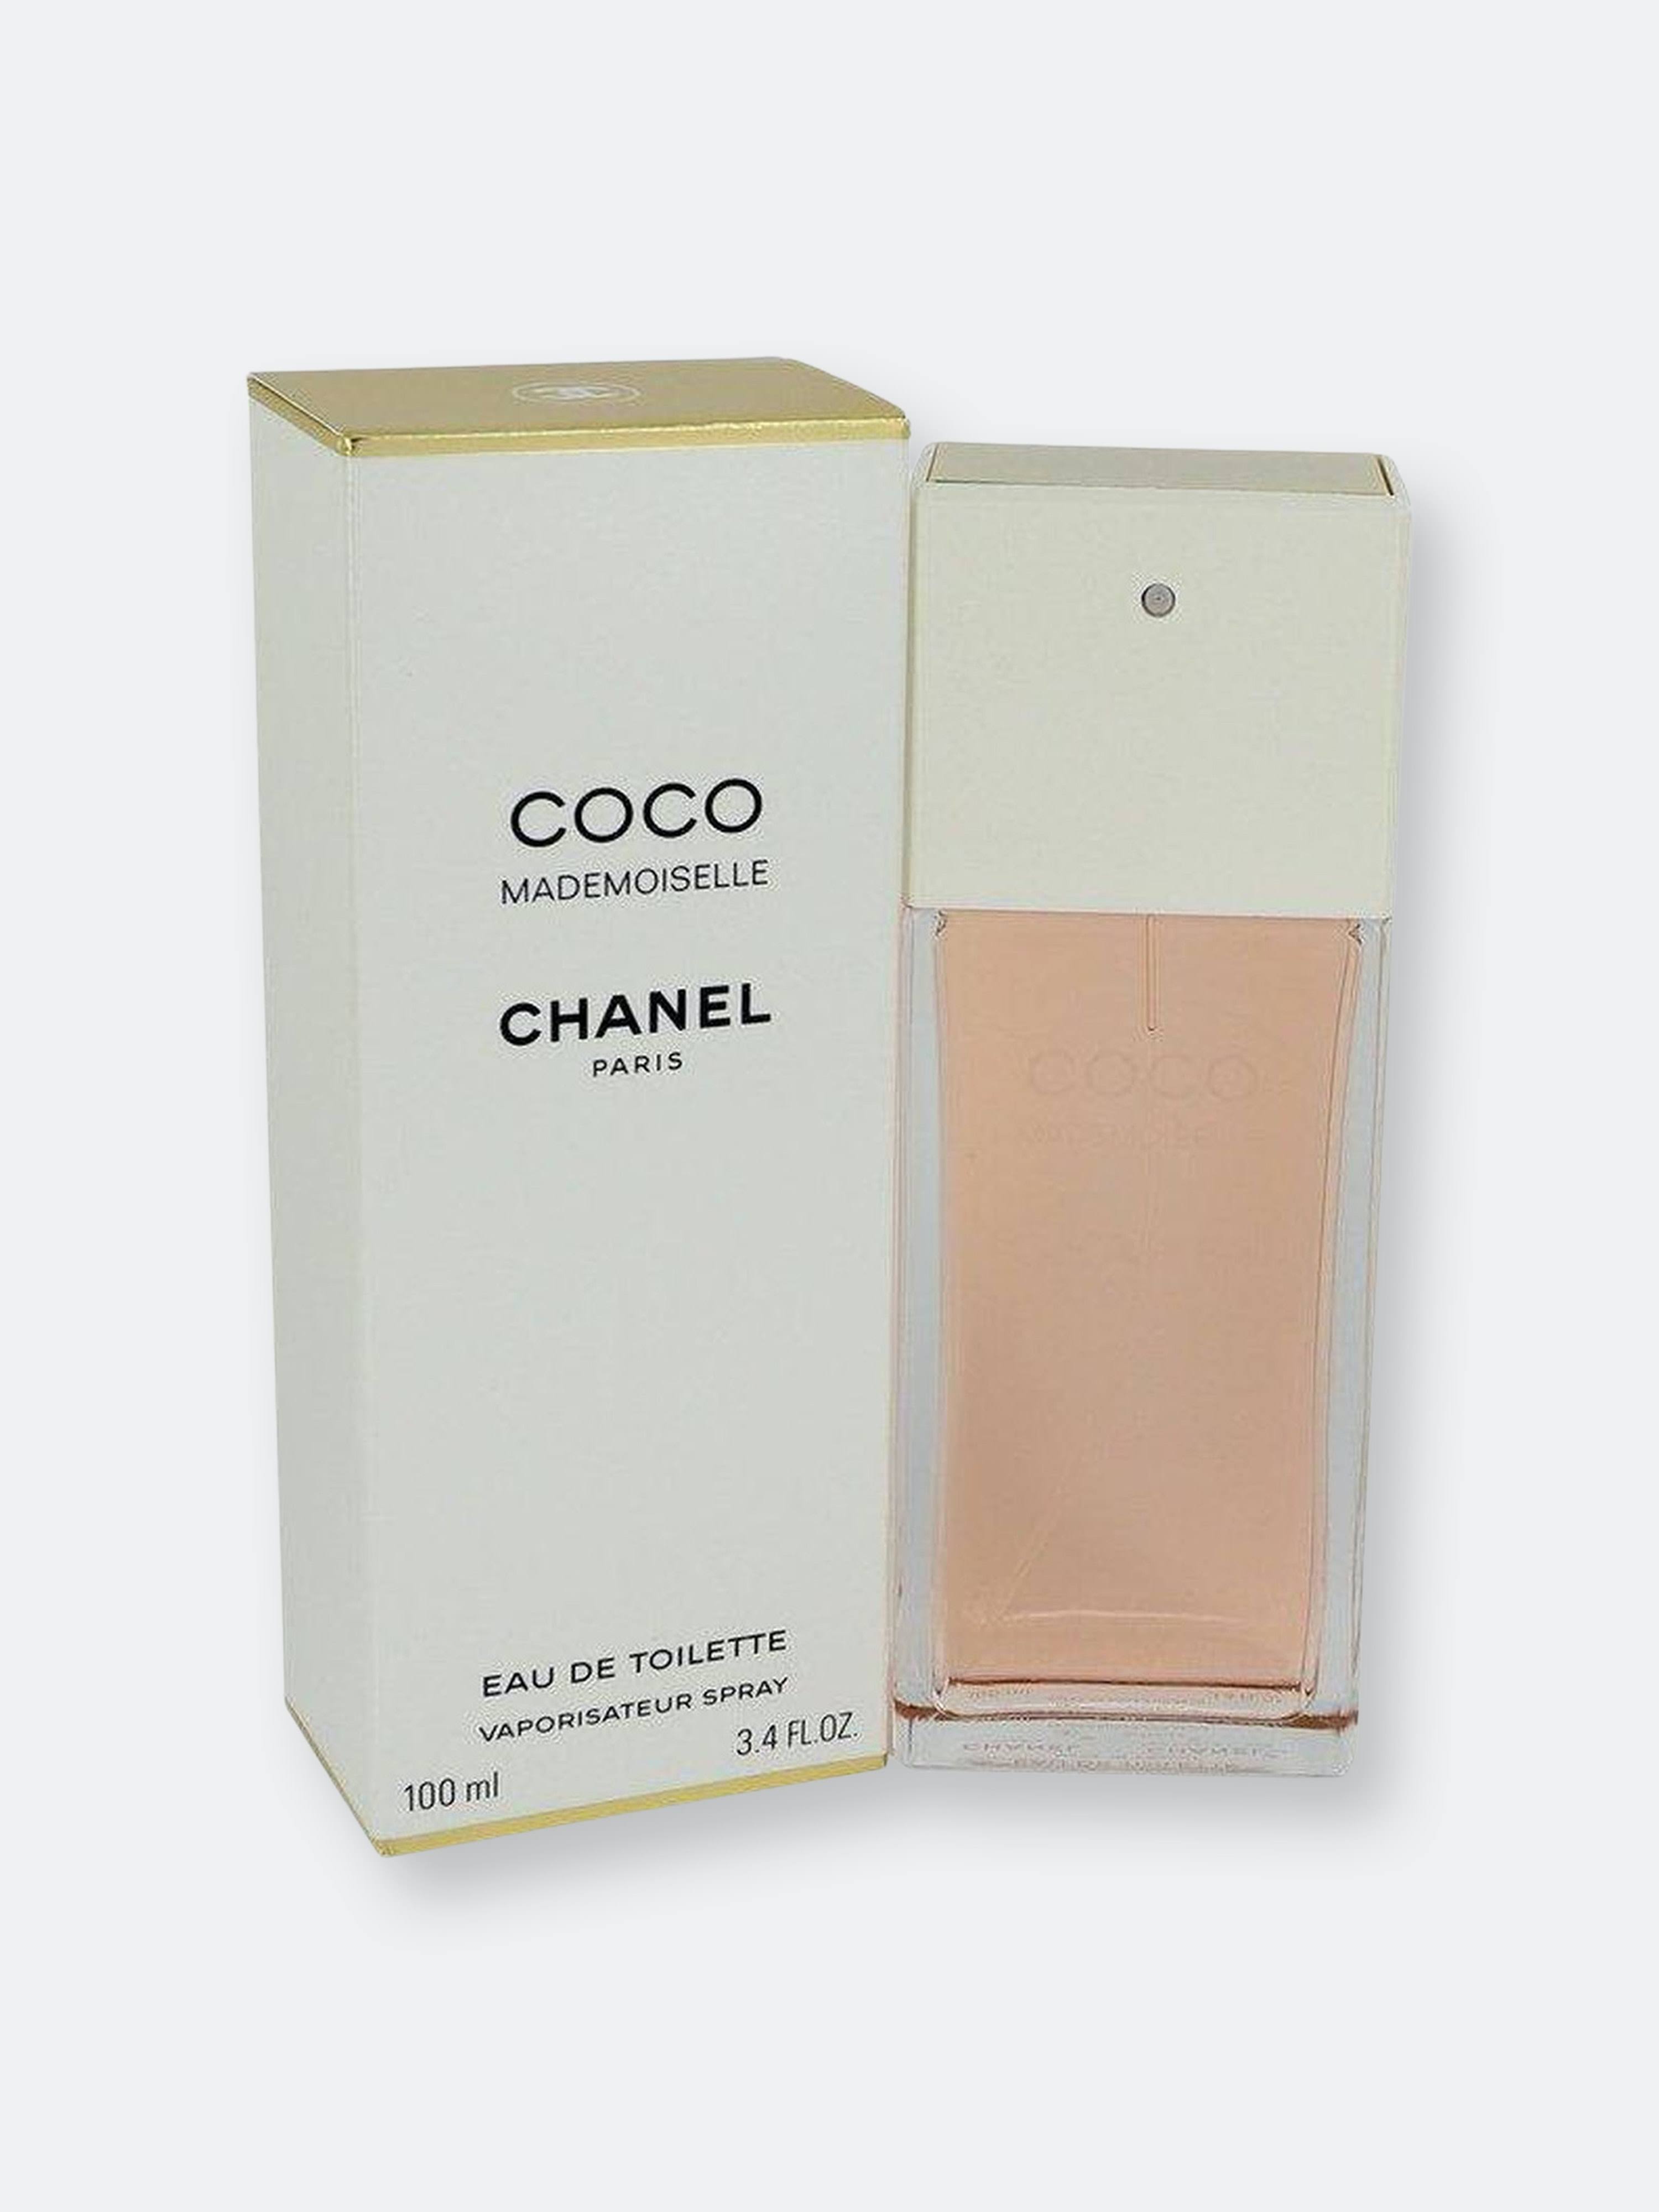 Coco mademoiselle eau de toilette spray by chanel 100 ml